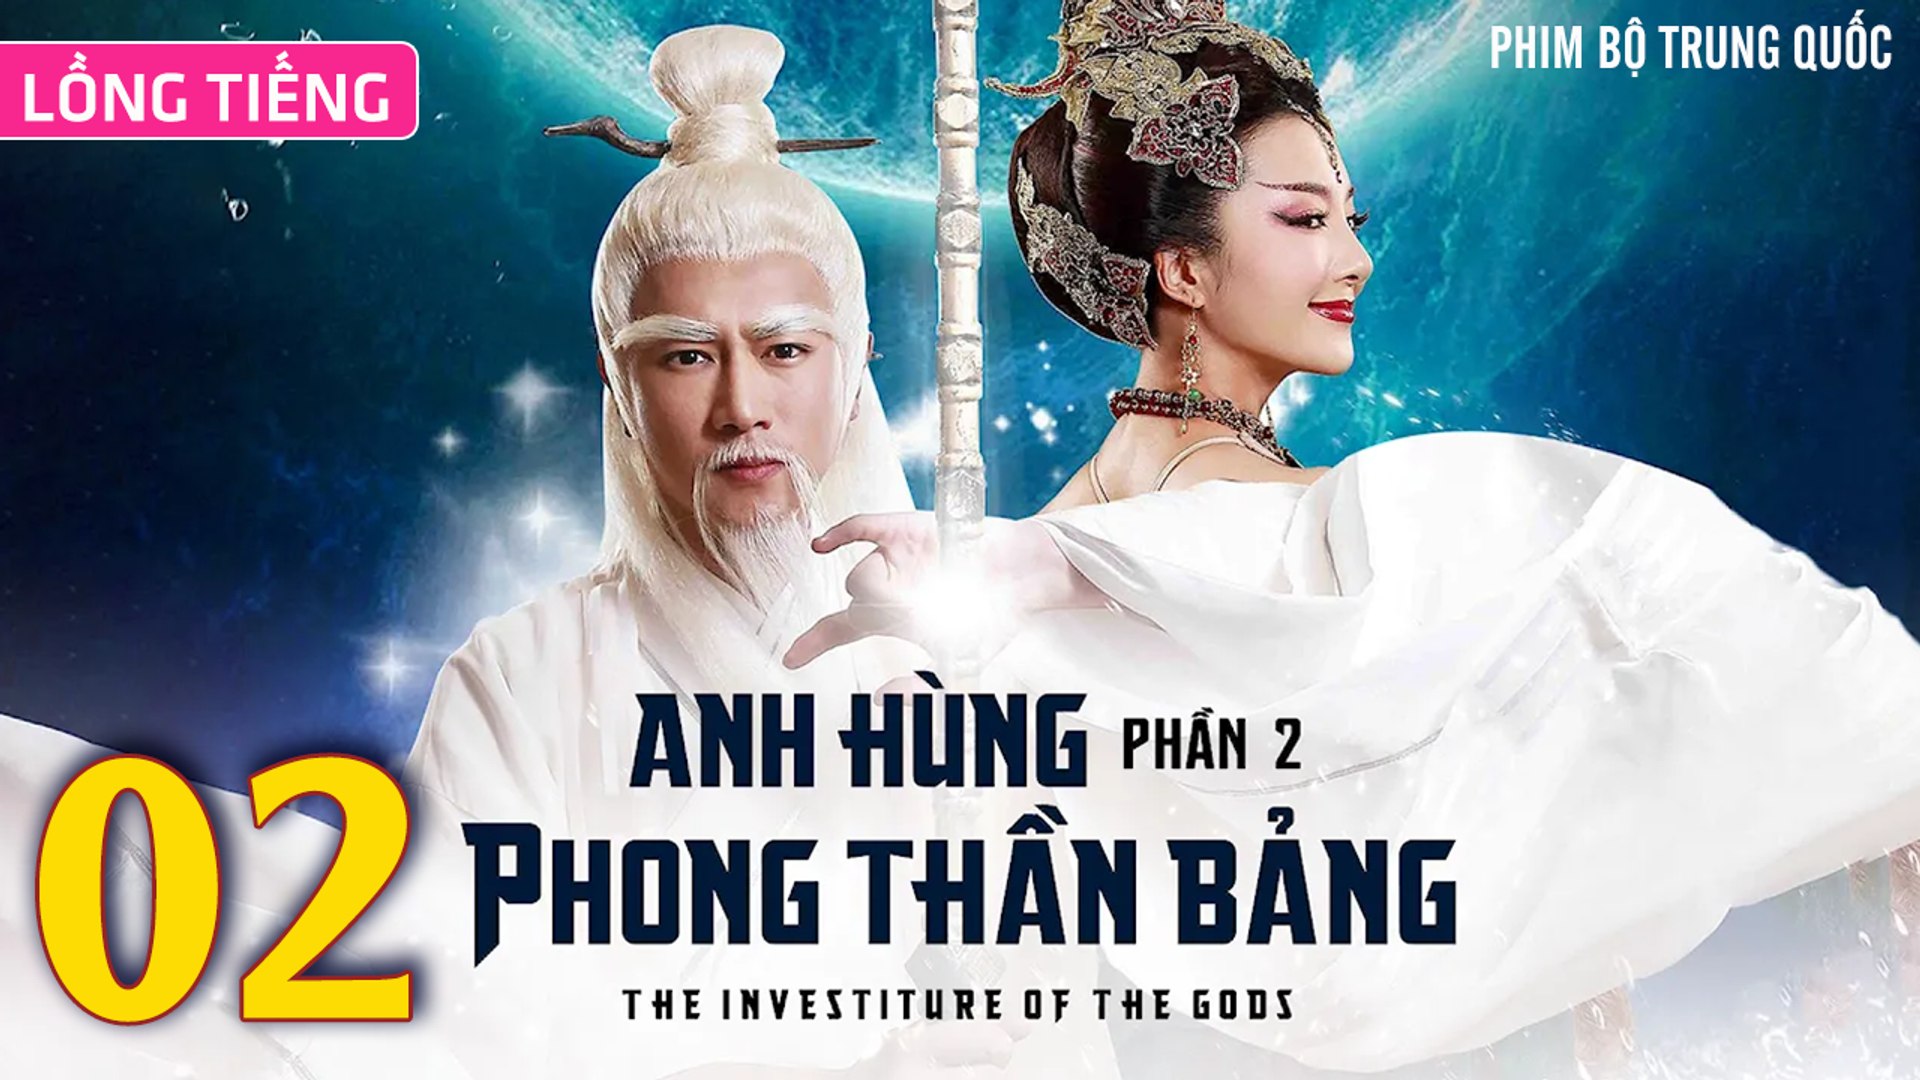 ⁣Phim Bộ Hay: ANH HÙNG PHONG THẦN BẢNG 2 - Tập 02 (Lồng Tiếng) | Phim Bộ Trung Quốc Hay Nhất 2023